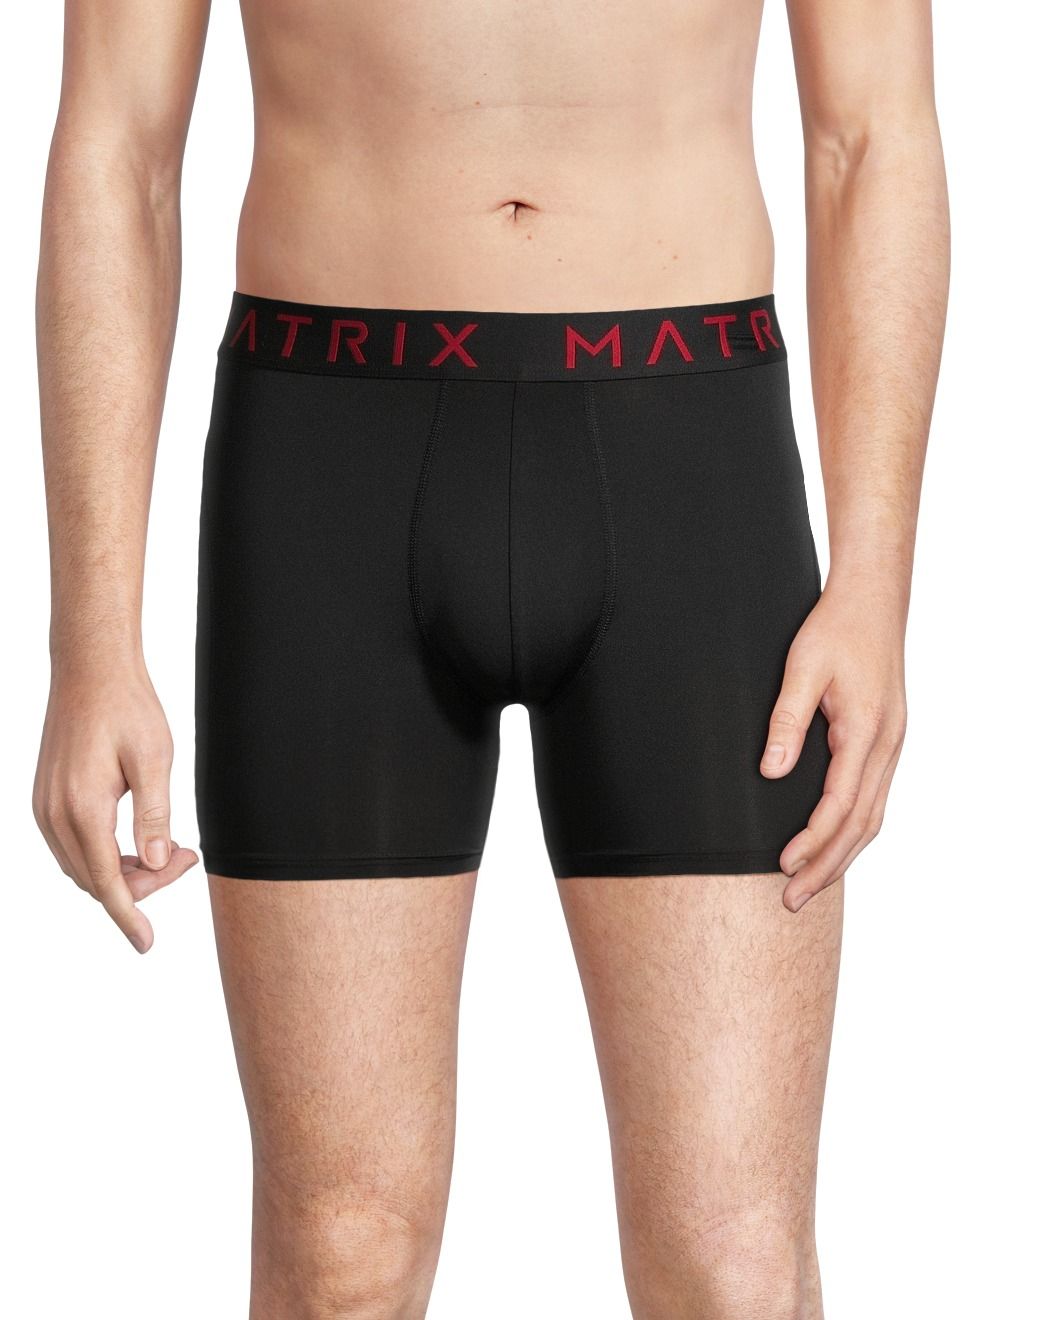 Matrix Men's 2 Pack Cotton Stretch Boxer Briefs Underwear